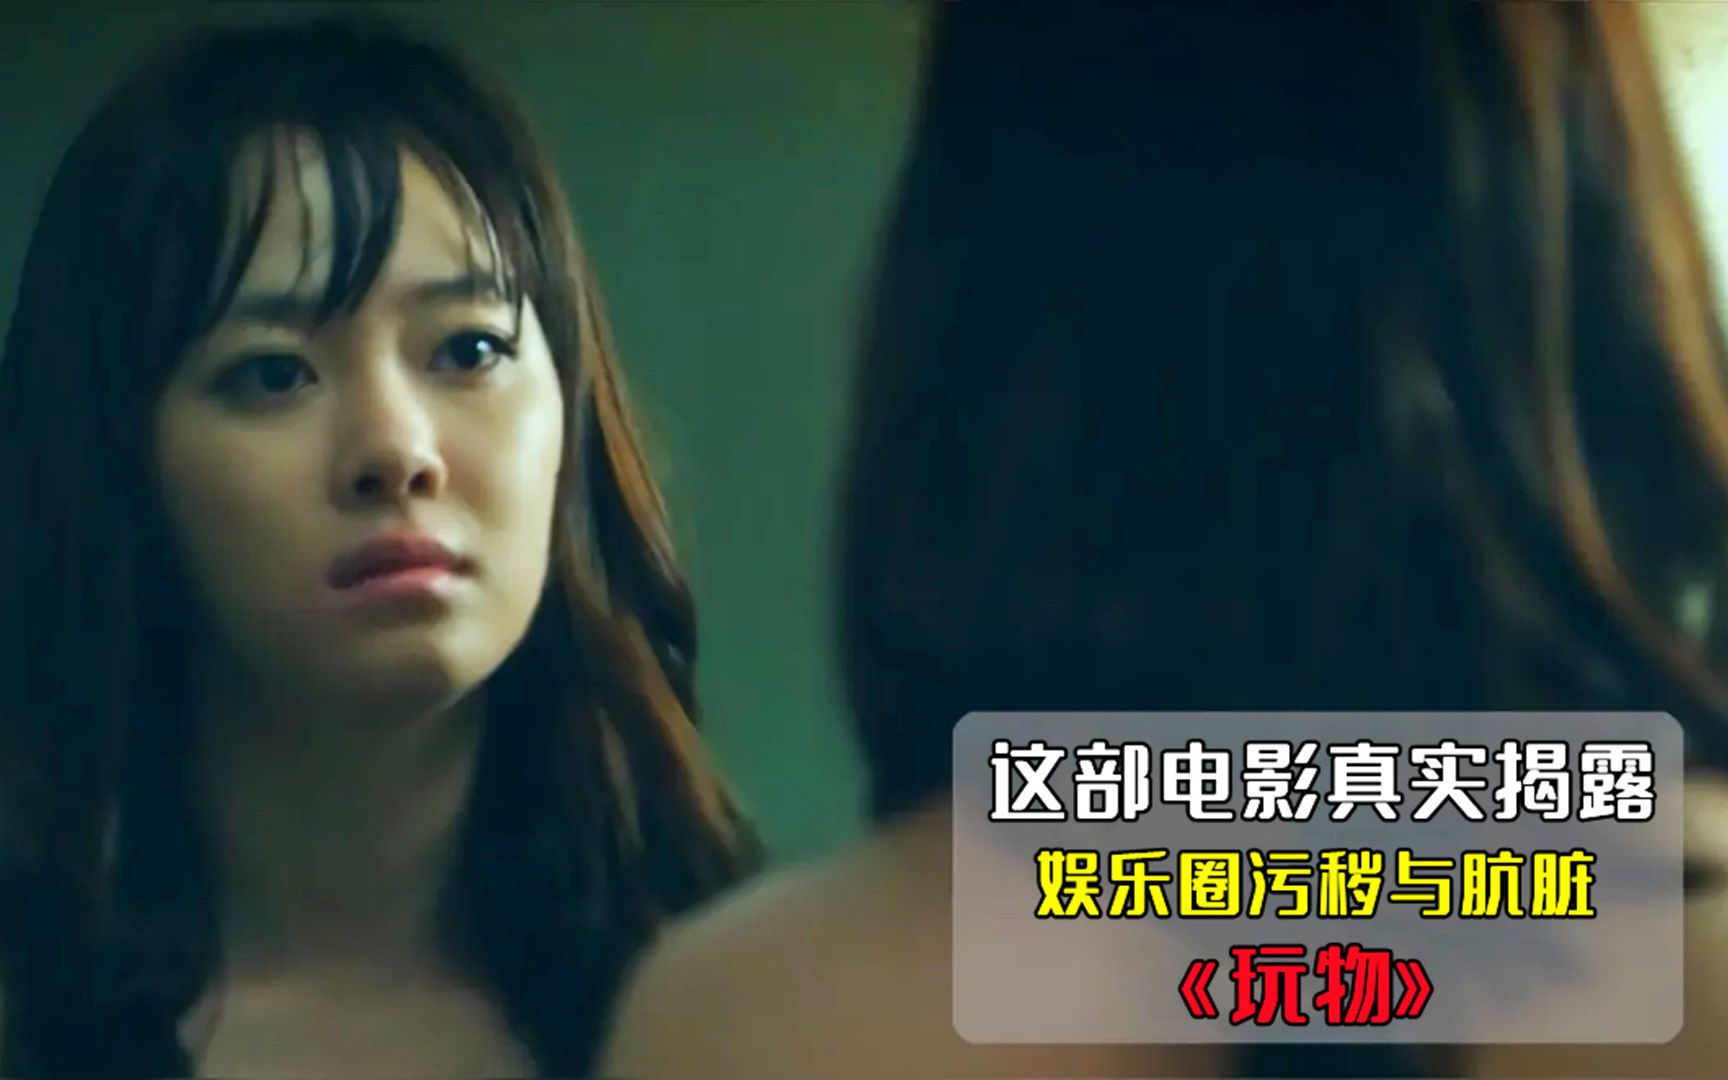 请问有此情景的韩国电视剧叫什么名字 女主角被绑架堵嘴_百度知道